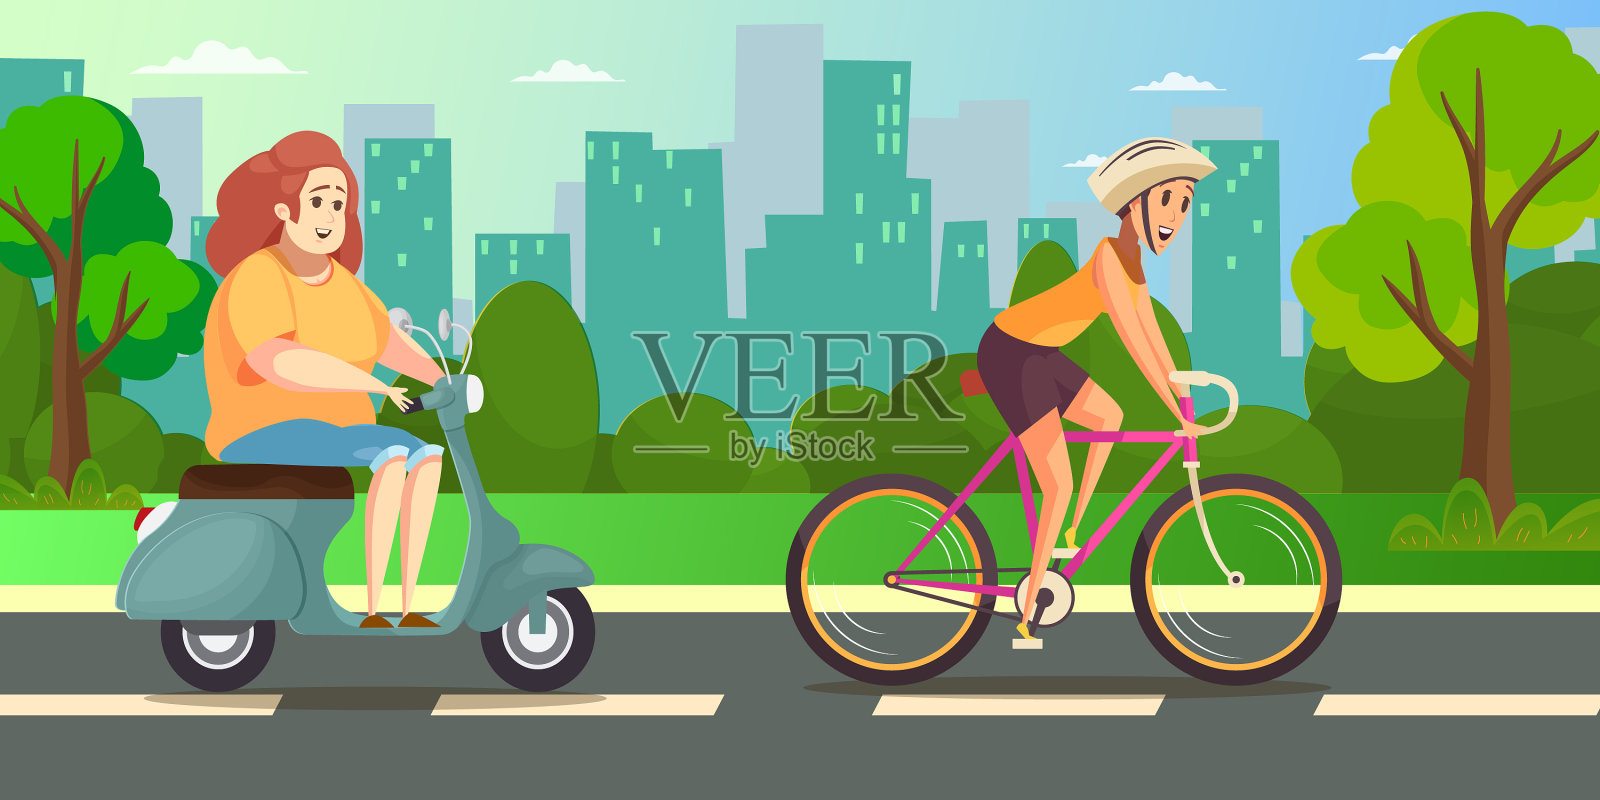 苗条和肥胖的女人骑摩托车和脚踏车插画图片素材